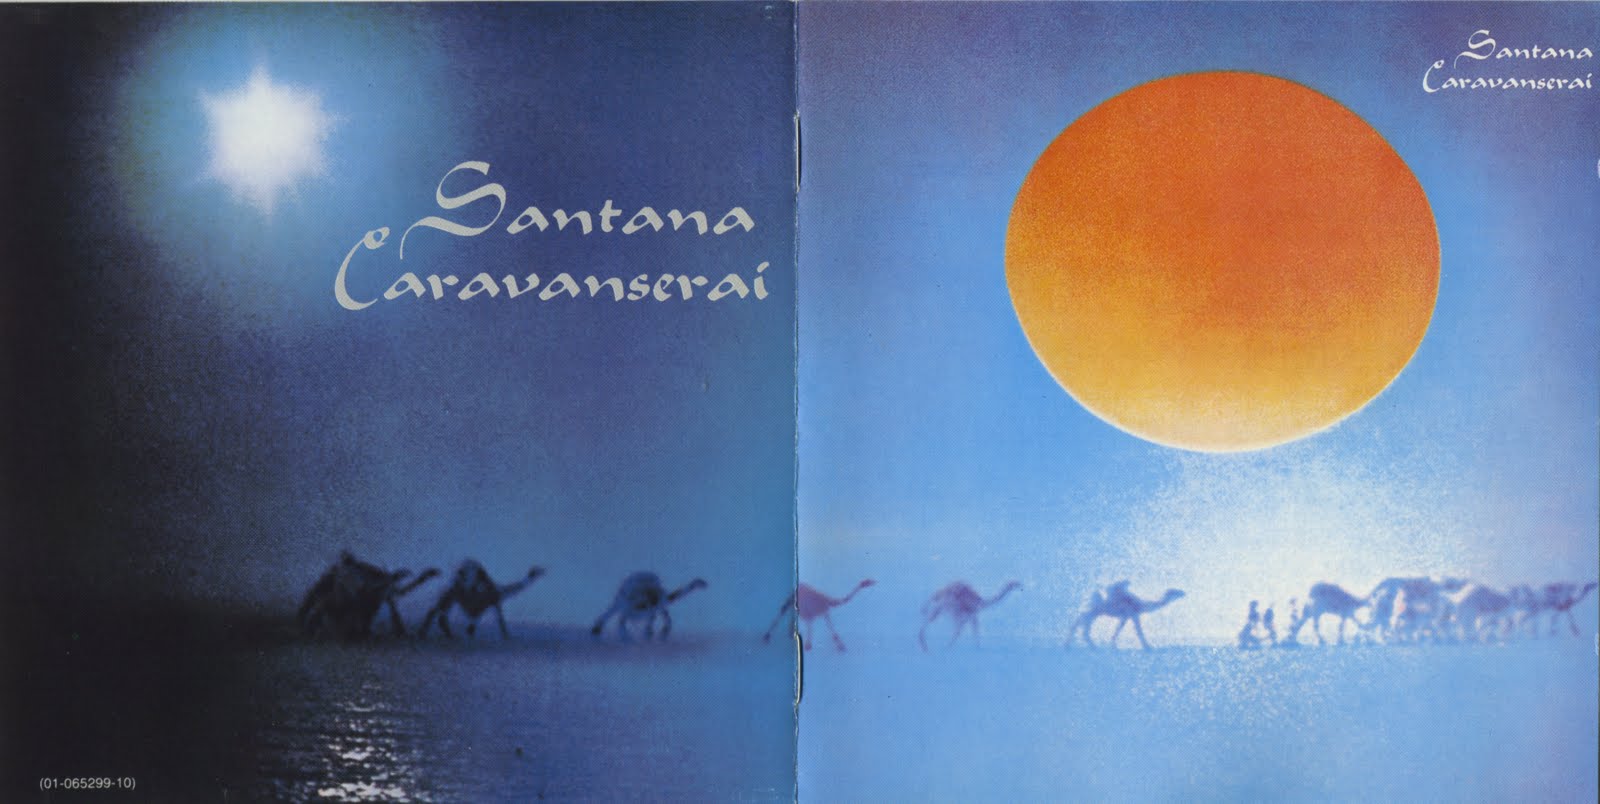 Portadas de discos que sirvan de cuadros para una habitación - Página 2 Santana-caravanserai-john-chase